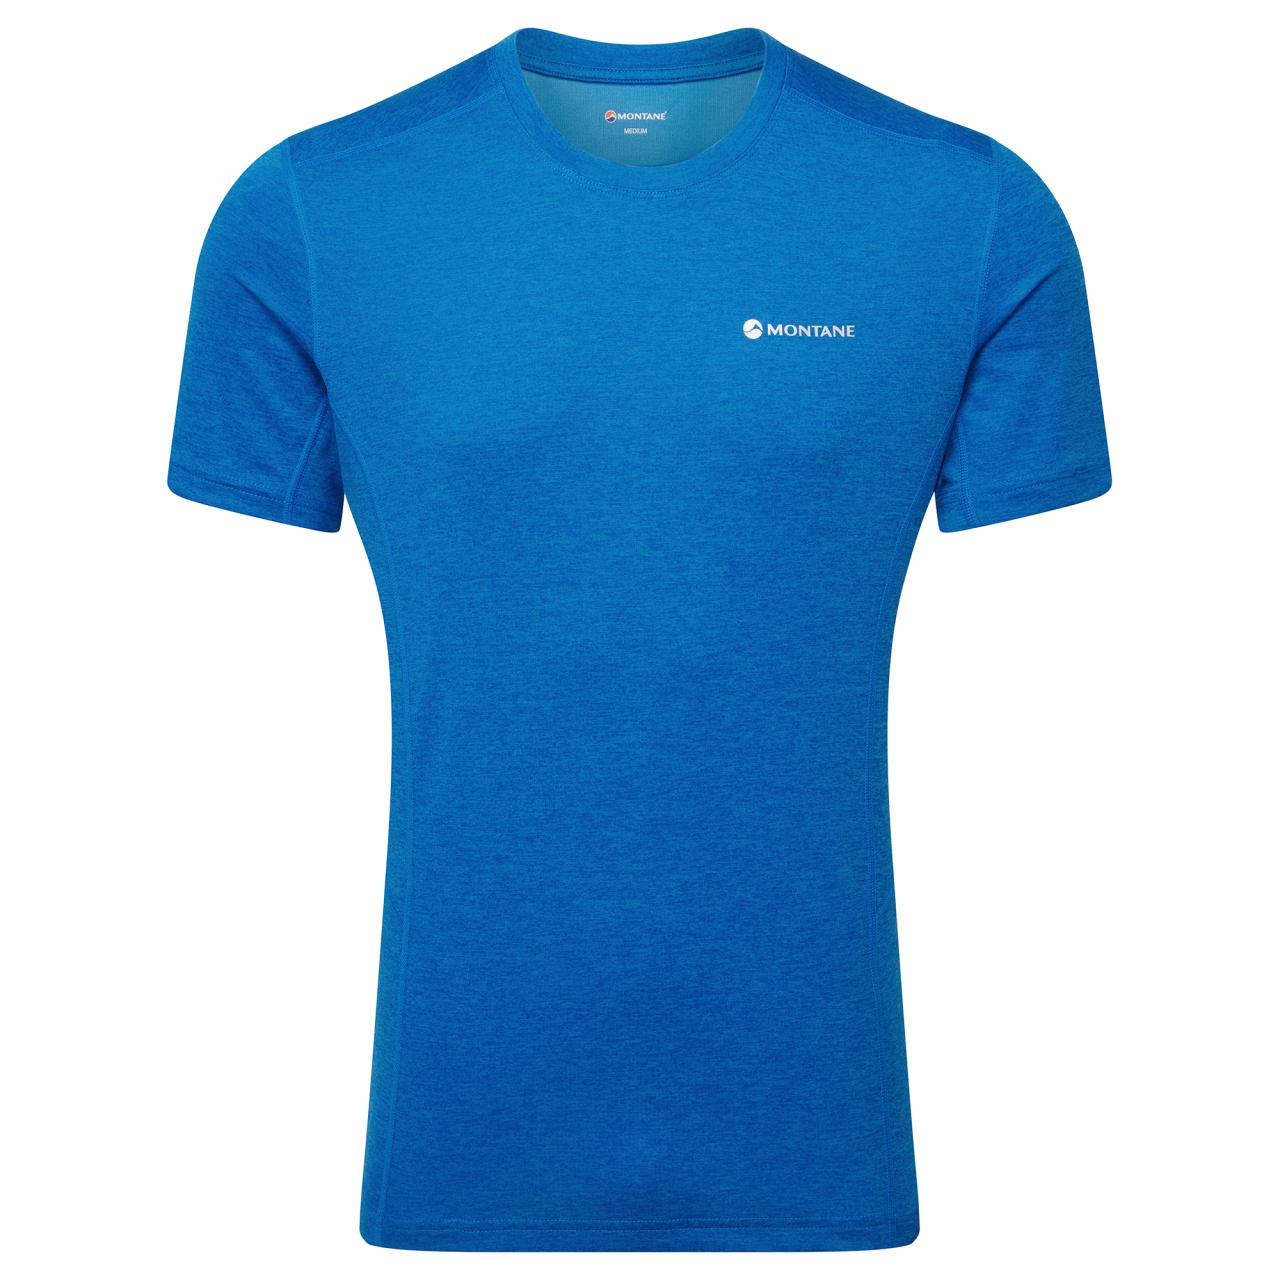 Montane pánské triko Dart T-Shirt Barva: neptune blue, Velikost: M